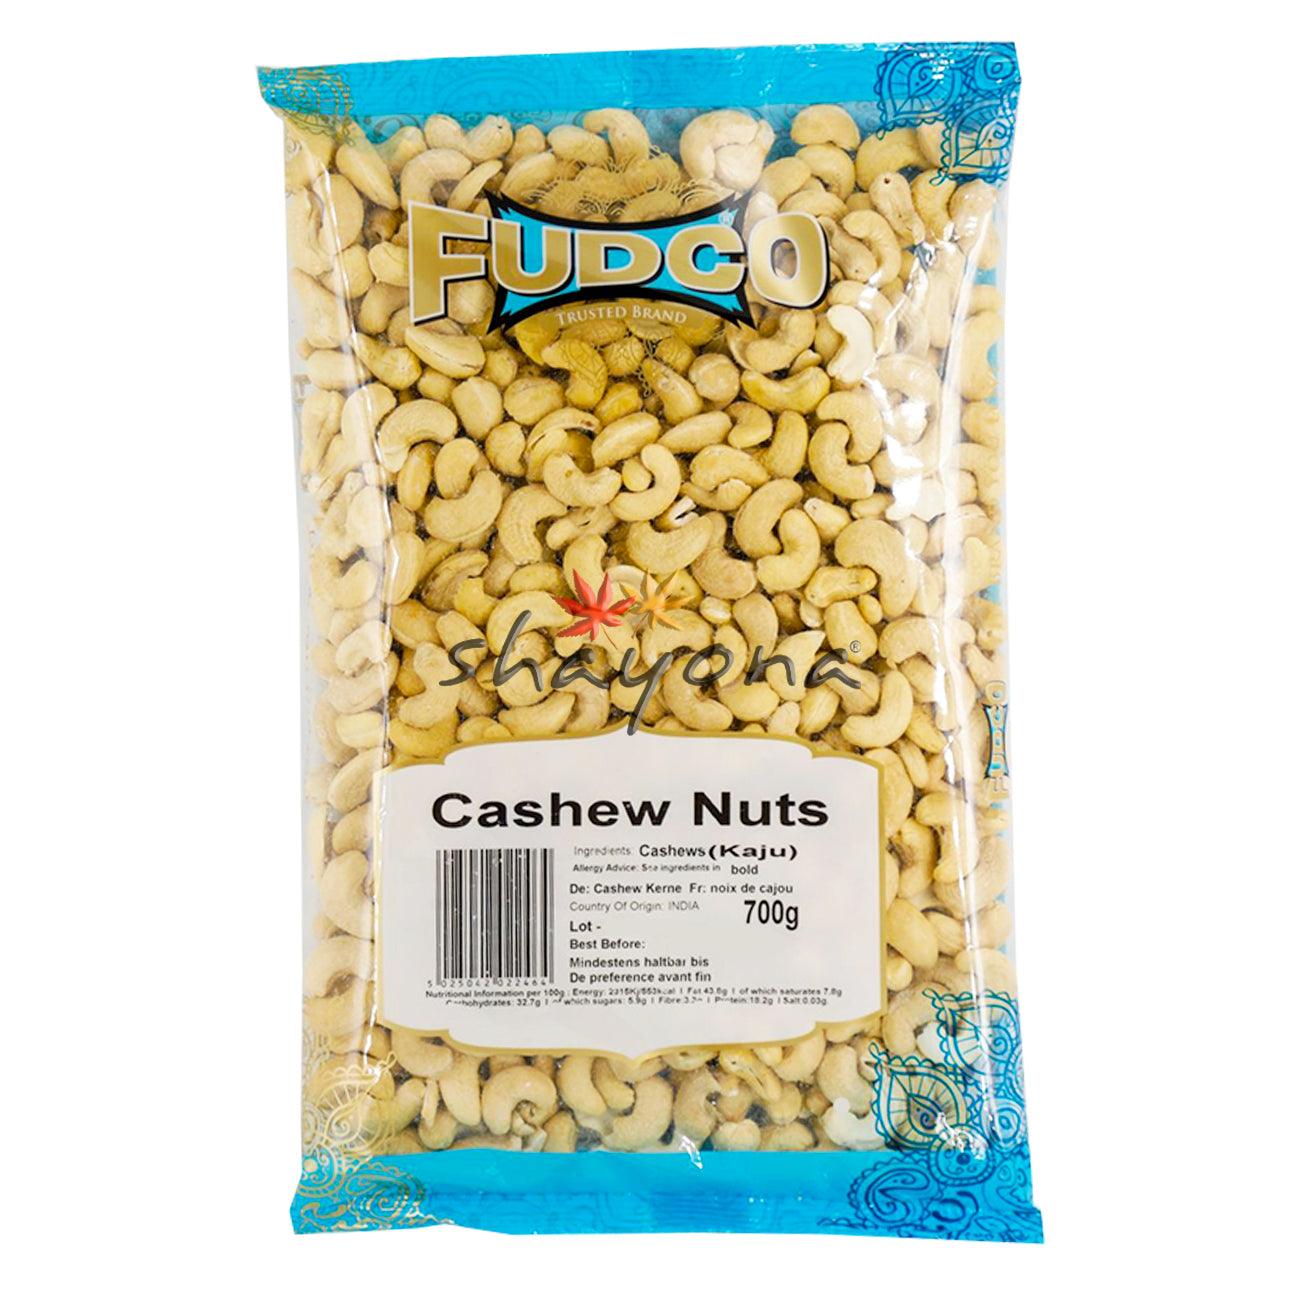 Fudco Cashew Nuts - Shayona UK